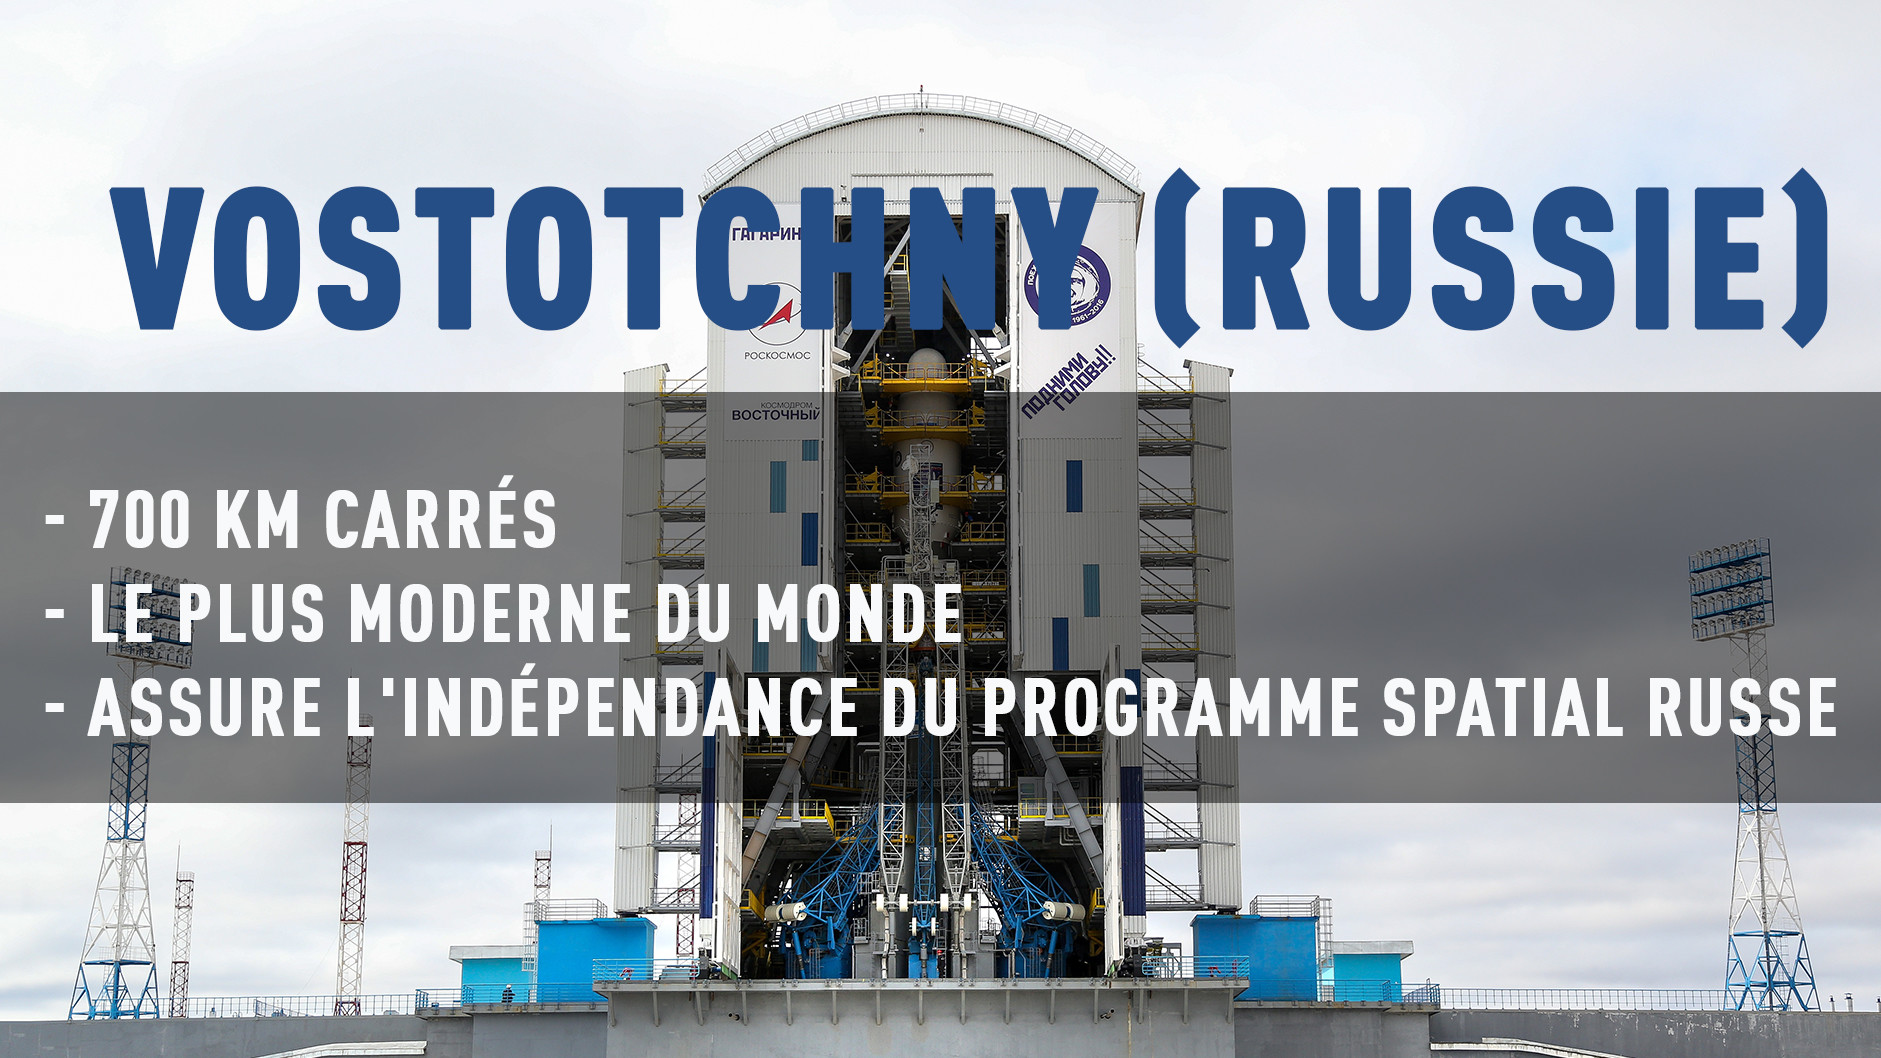 Le nouveau cosmodrome de Vostotchny a effectué son historique premier lancement (VIDEO)